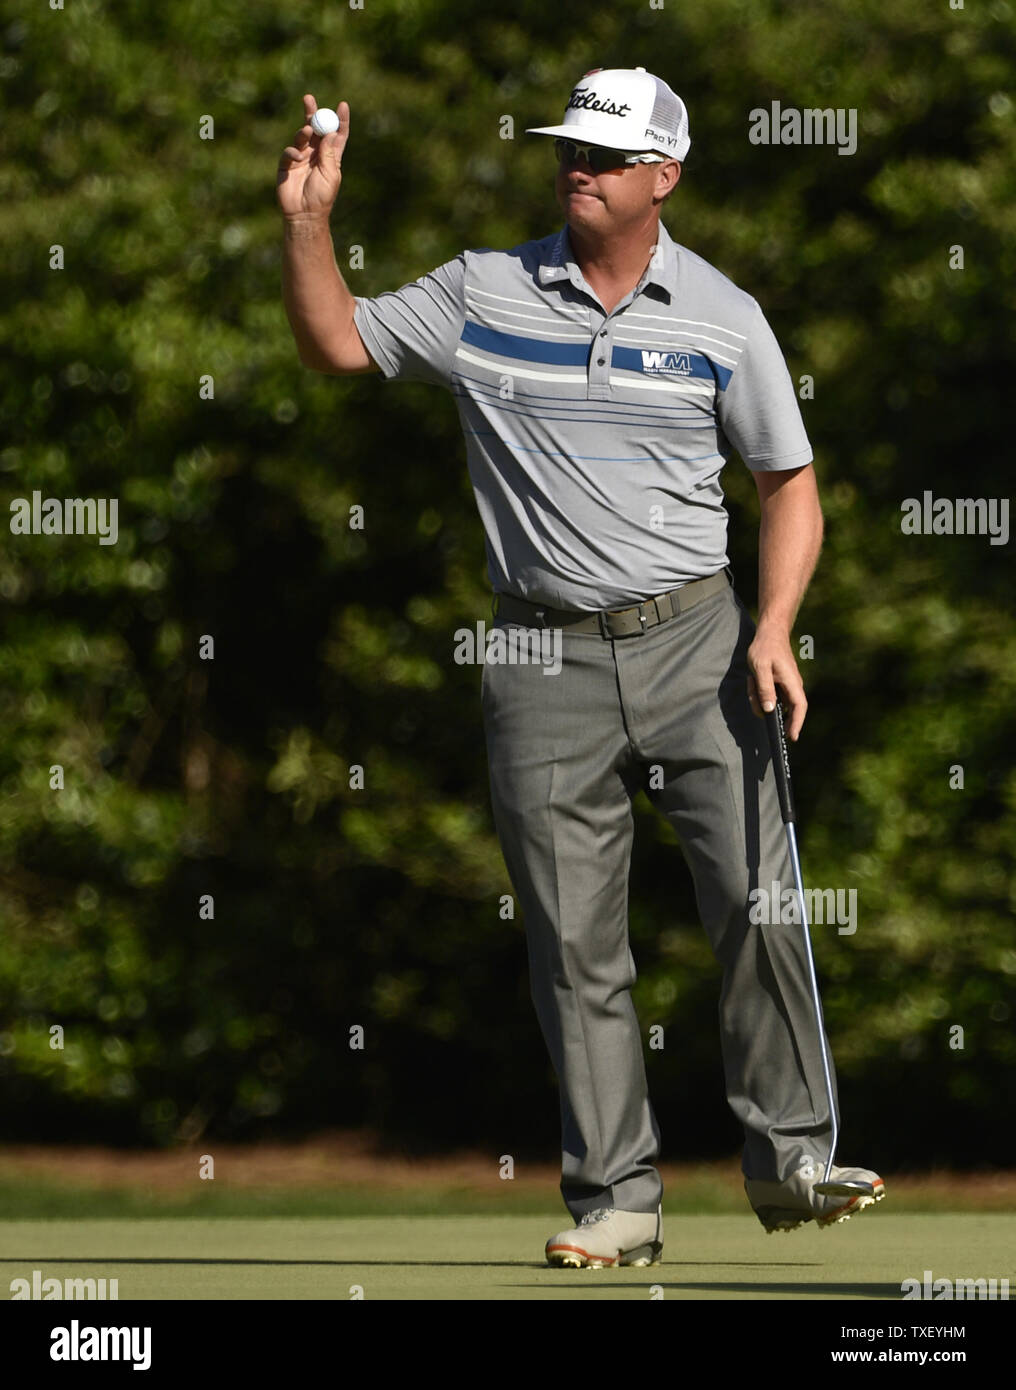 Charley Hoffman reagisce dopo il naufragio di un putt per il birdie sul dodicesimo foro nel terzo round del 2015 Masters a Augusta National Golf Club a Augusta, in Georgia il 11 aprile 2015. Foto di Kevin Dietsch/UPI Foto Stock